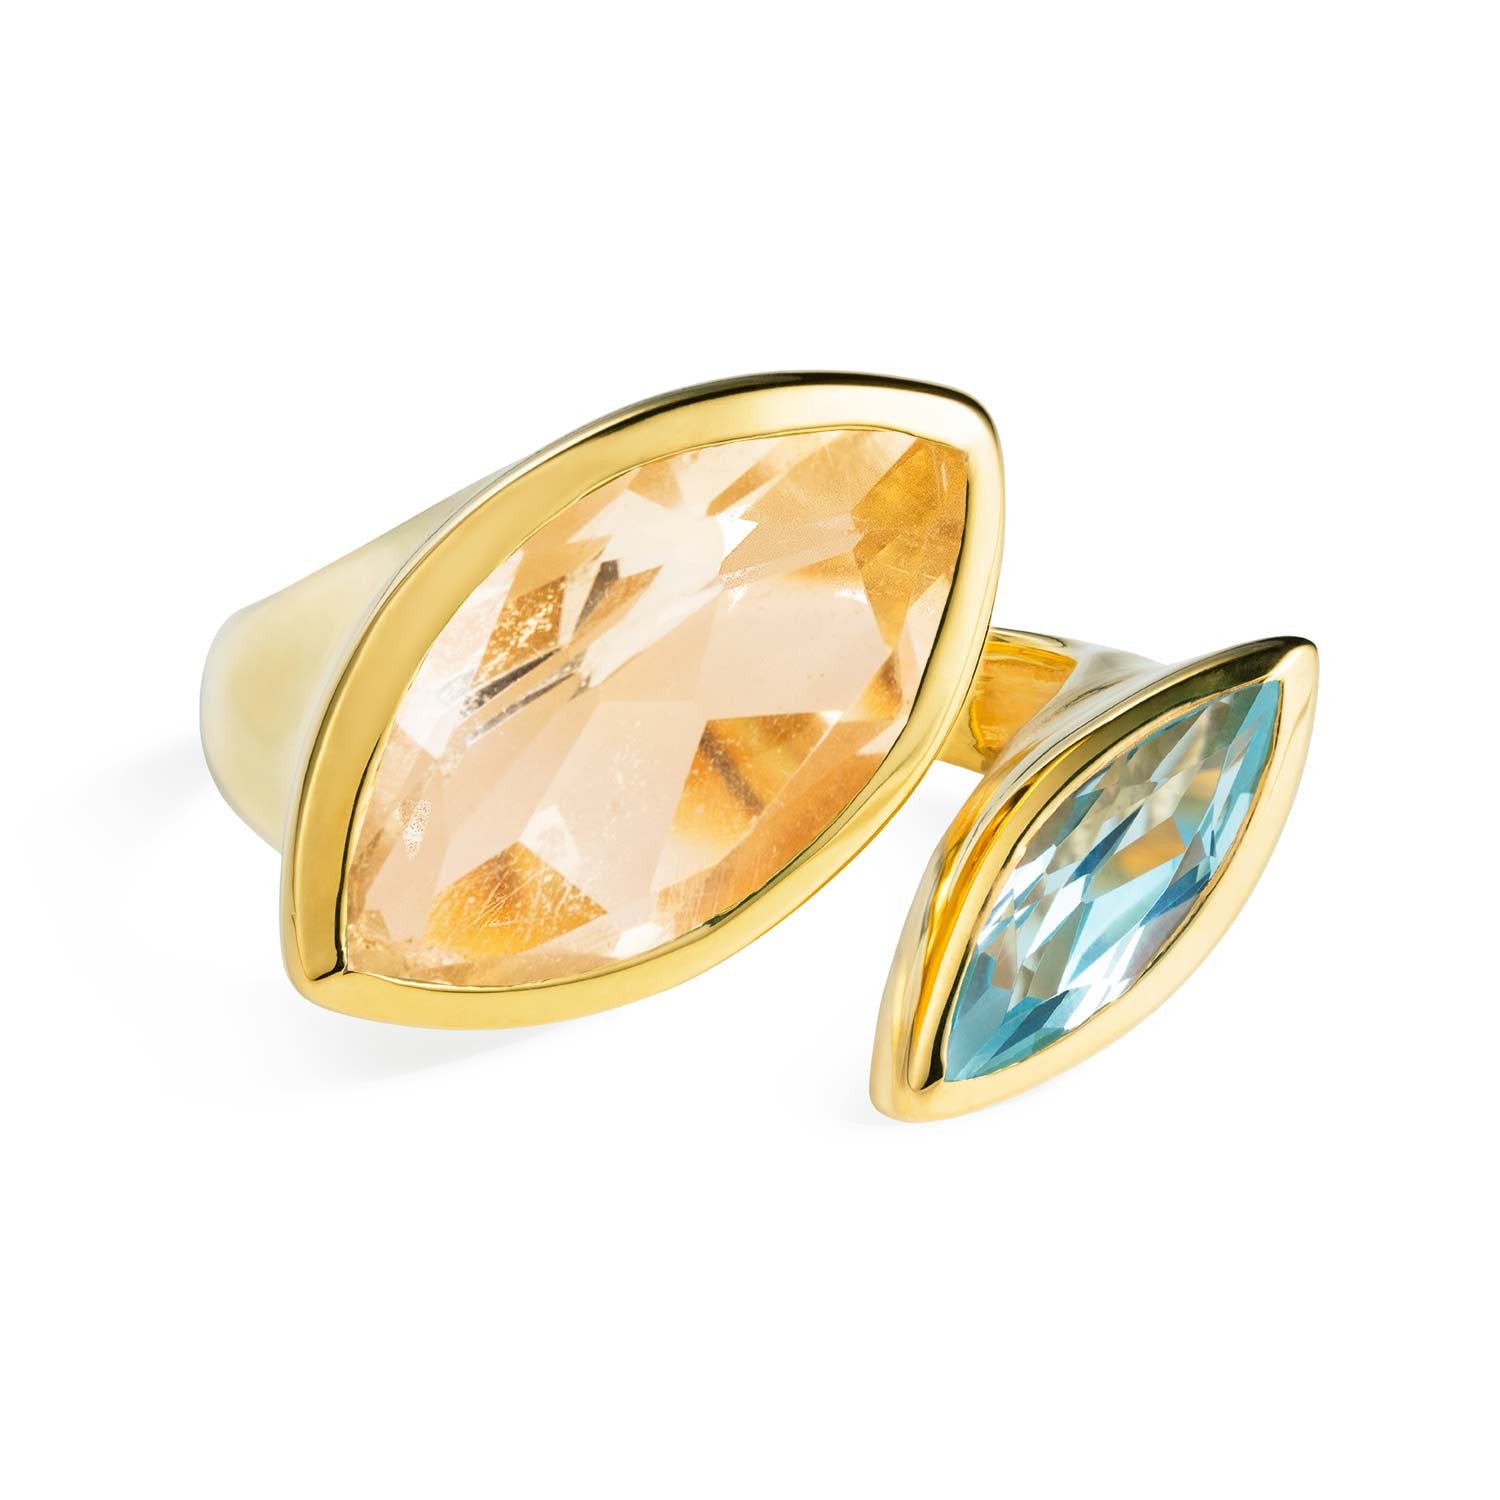 Gold vermeil cocktail ring, Citrine, Aqua Chalcedony gemstone, geometric, unique British design